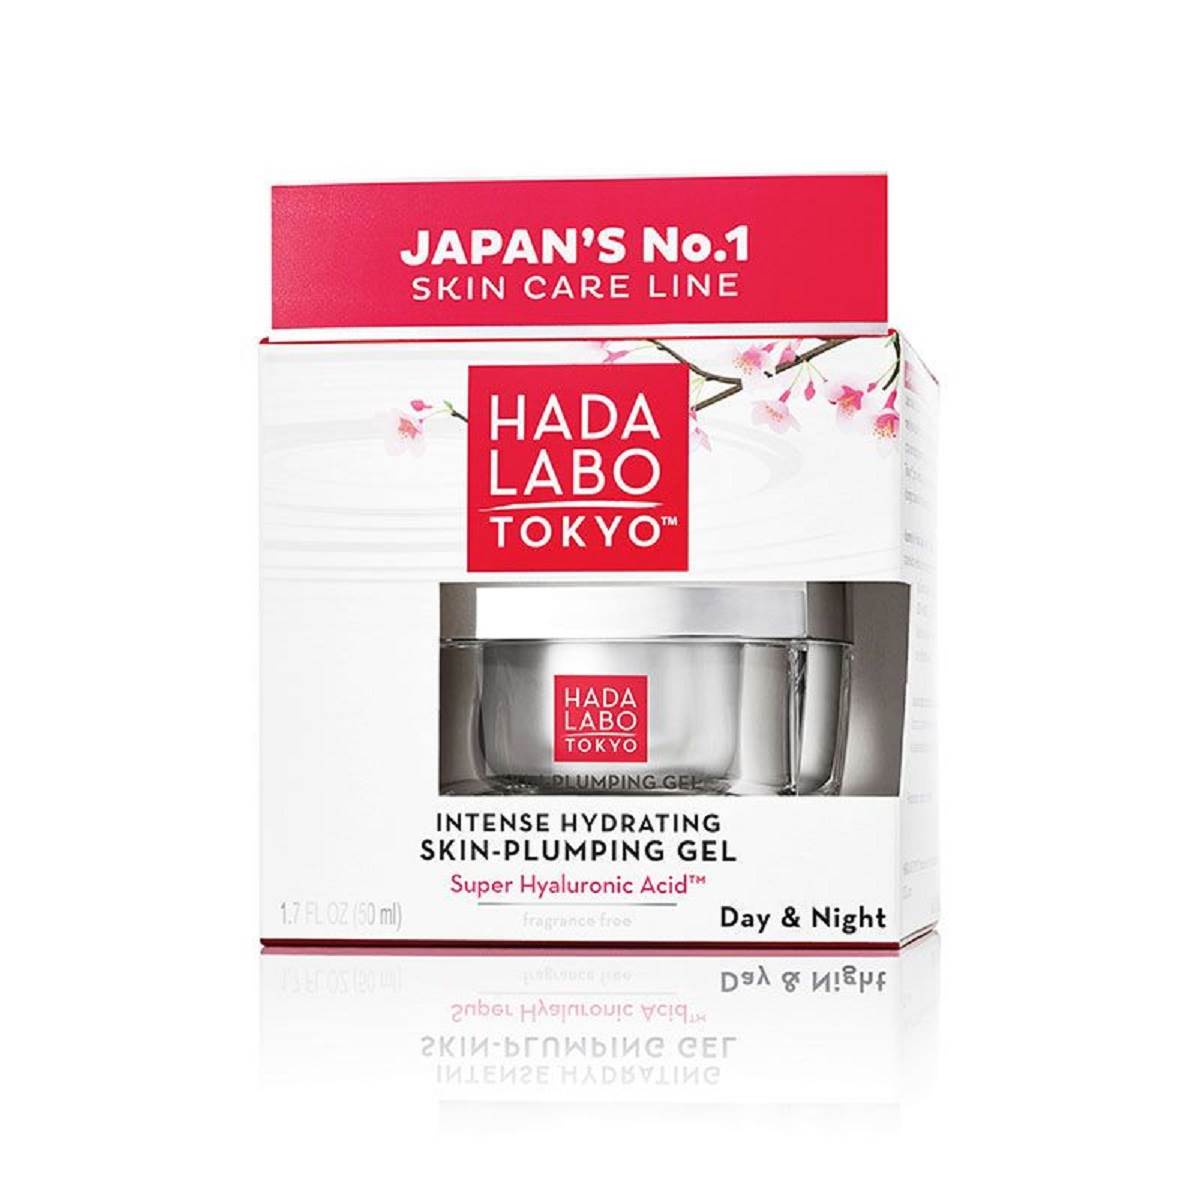  Hada Labo Tokyo hidratantna krema za lice. 